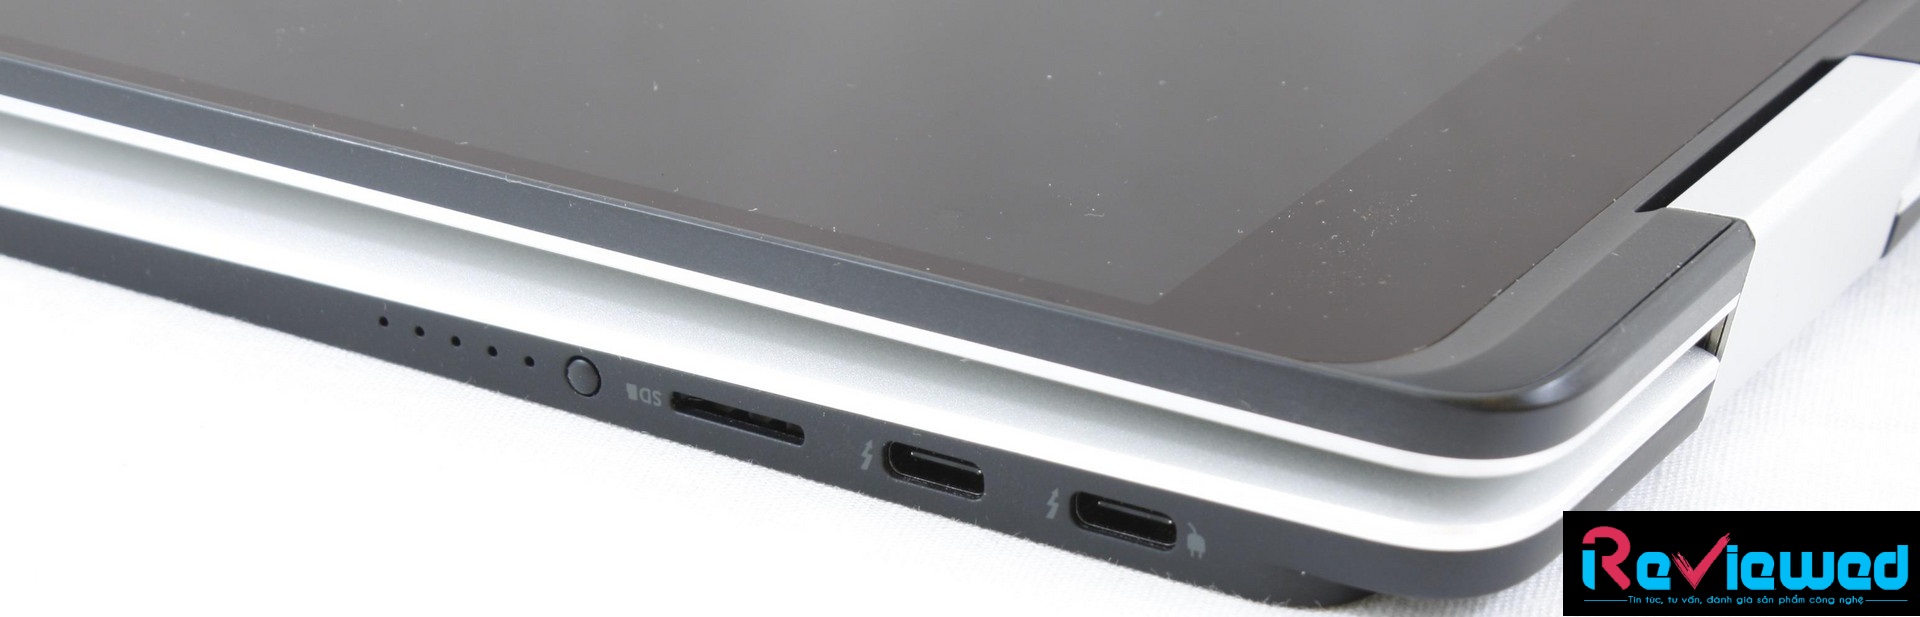 Đánh giá Dell XPS 15 9575: Laptop 2 trong 1 nhưng hiệu năng mạnh mẽ, Chuyên trang tư vấn laptop